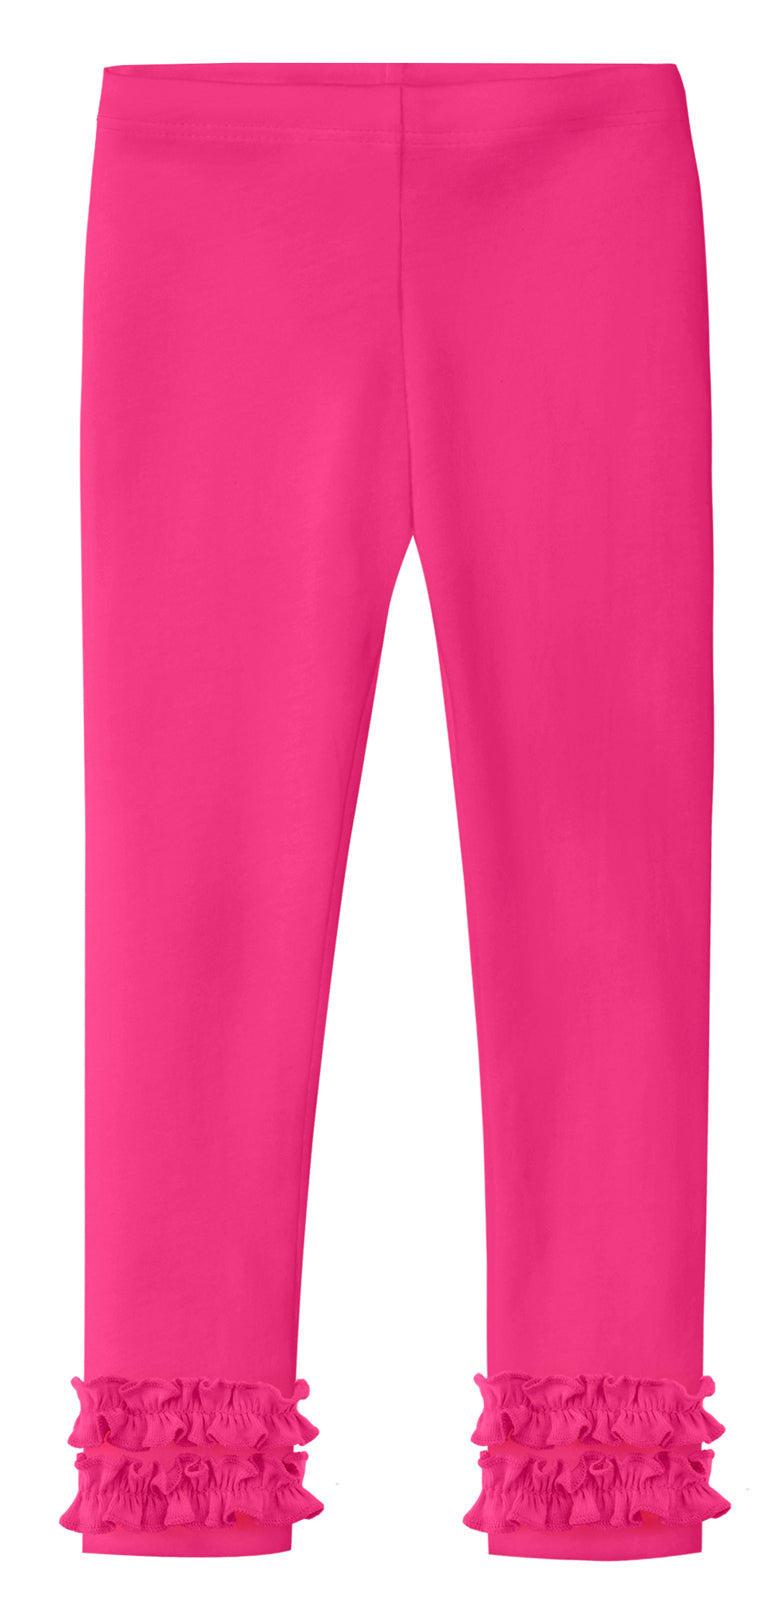 Unique pink color cotton leggings